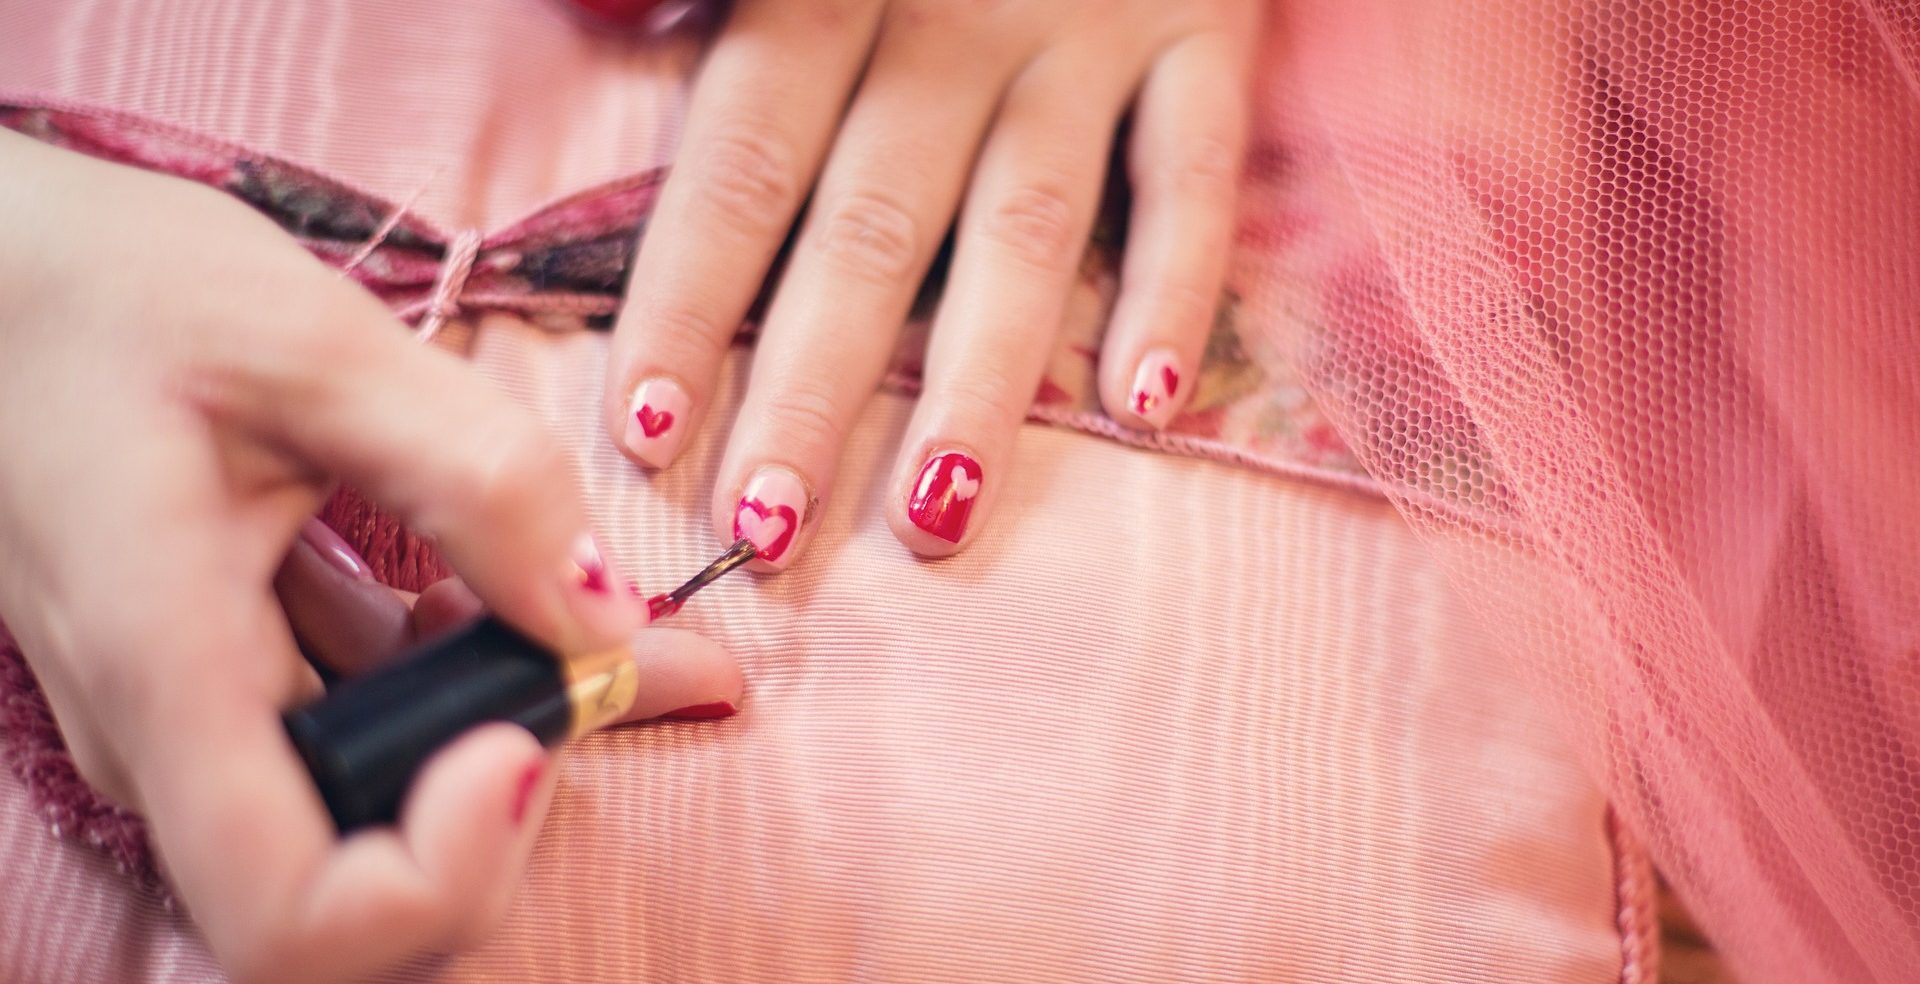 imagen de uñas pintadas con un corazón para el día de san valentín